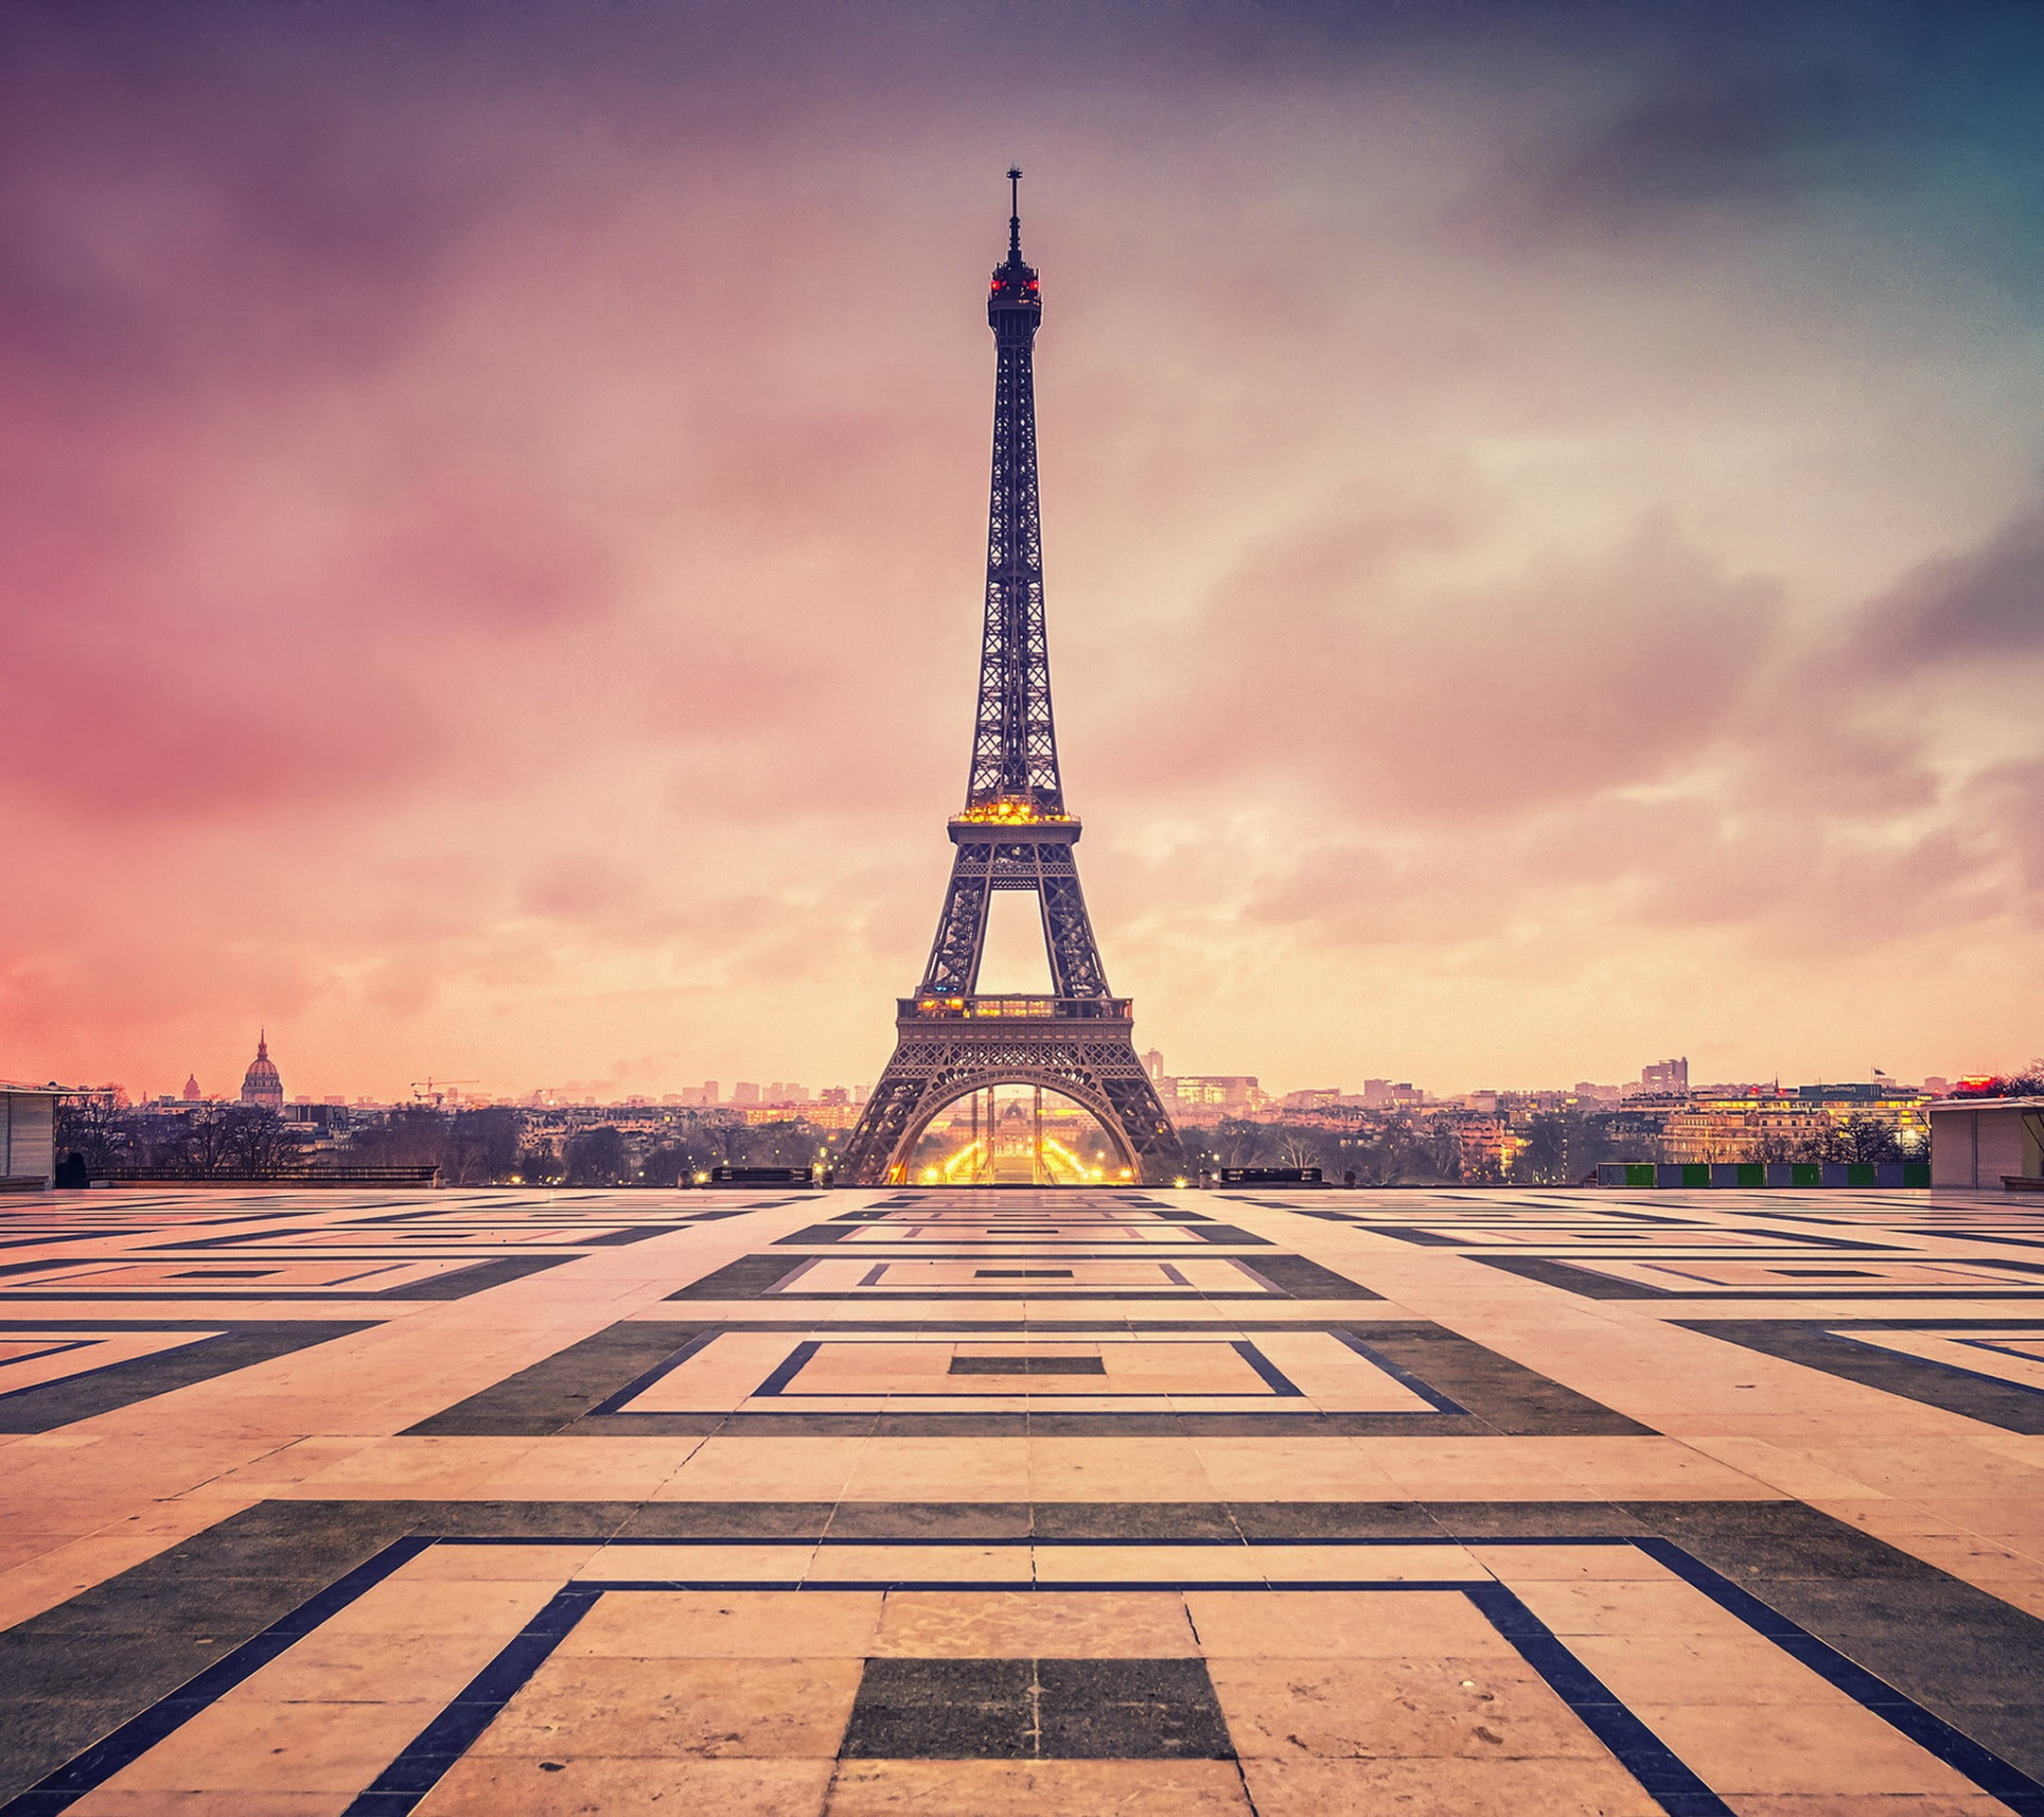 Eiffel Tower illustration, France, Paris, architecture, sky, travel destinations